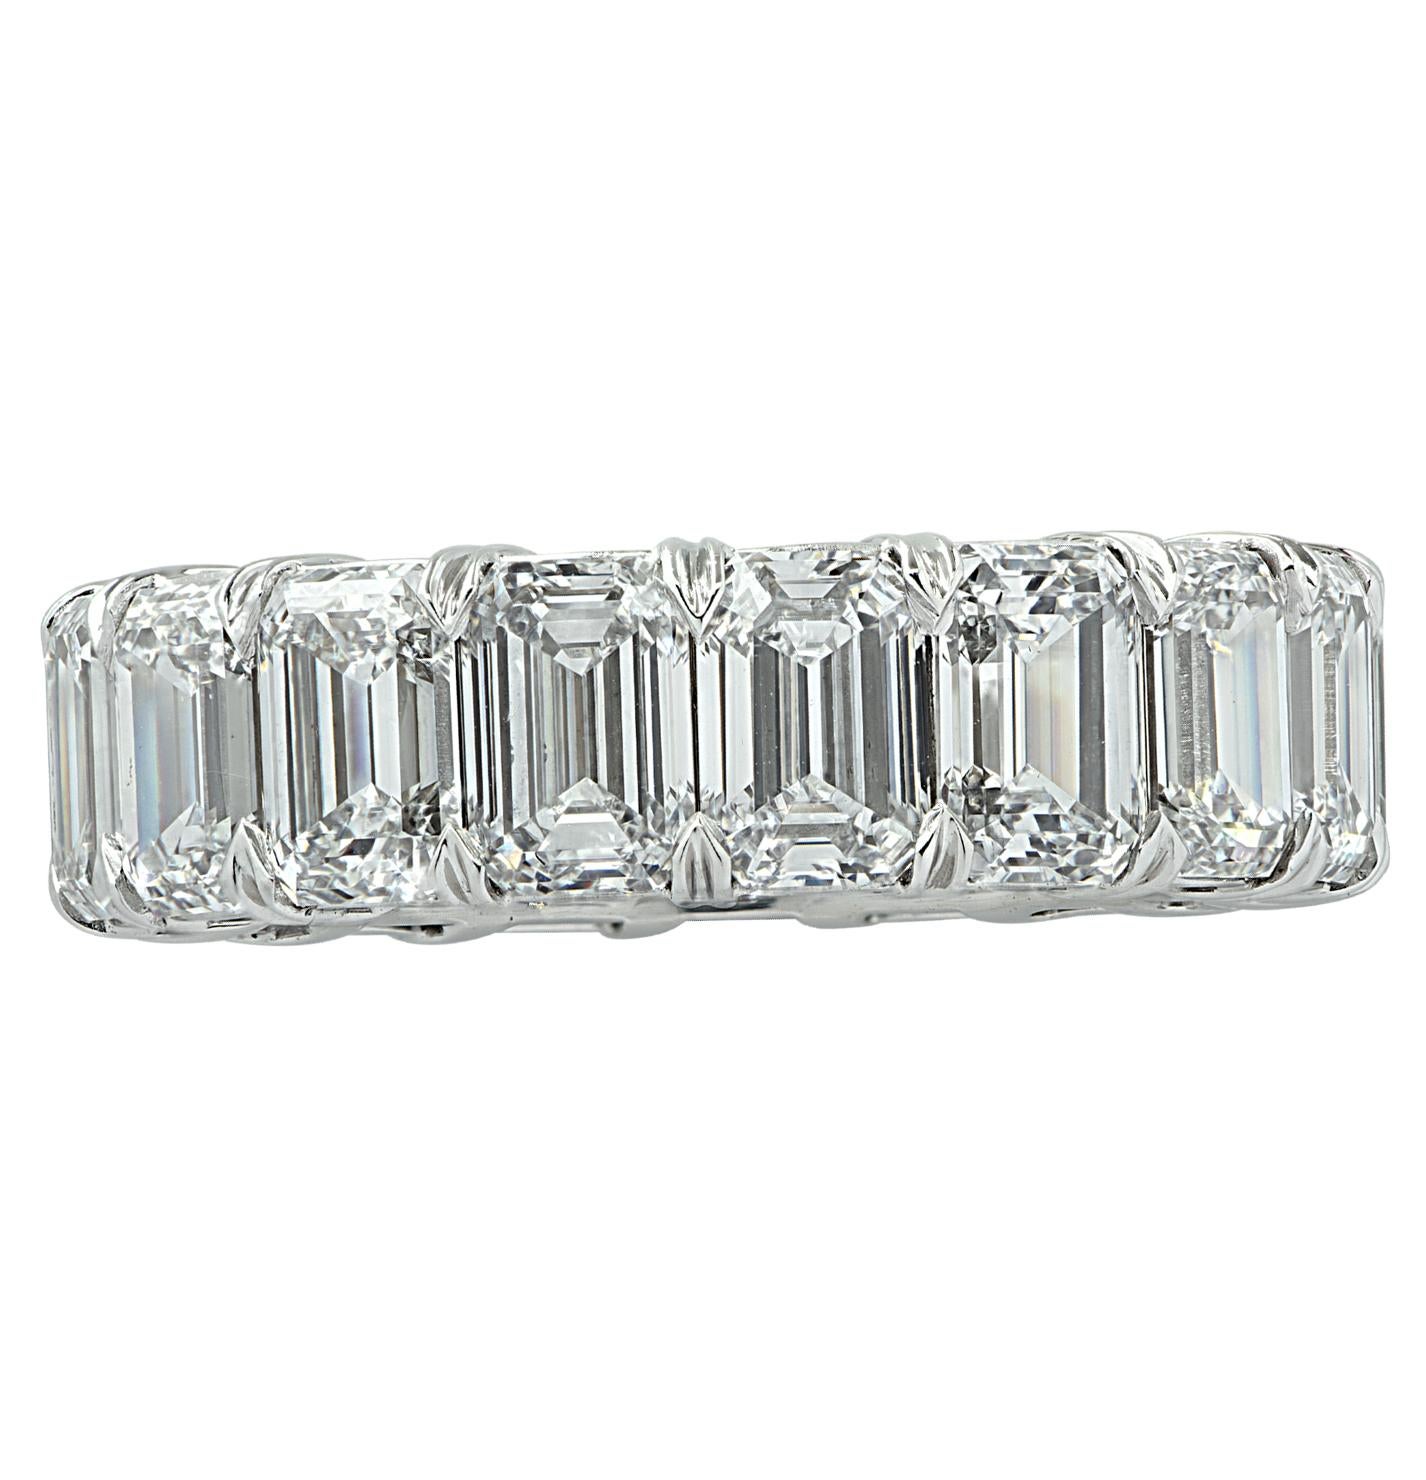 Anneau d'éternité Vivid Diamonds réalisé à la main en platine, mettant en valeur 17 spectaculaires diamants taille émeraude certifiés par le GIA, d'un poids total de 8,63 carats, de couleur D-E et de pureté VVS1- VS1. Chaque diamant a été